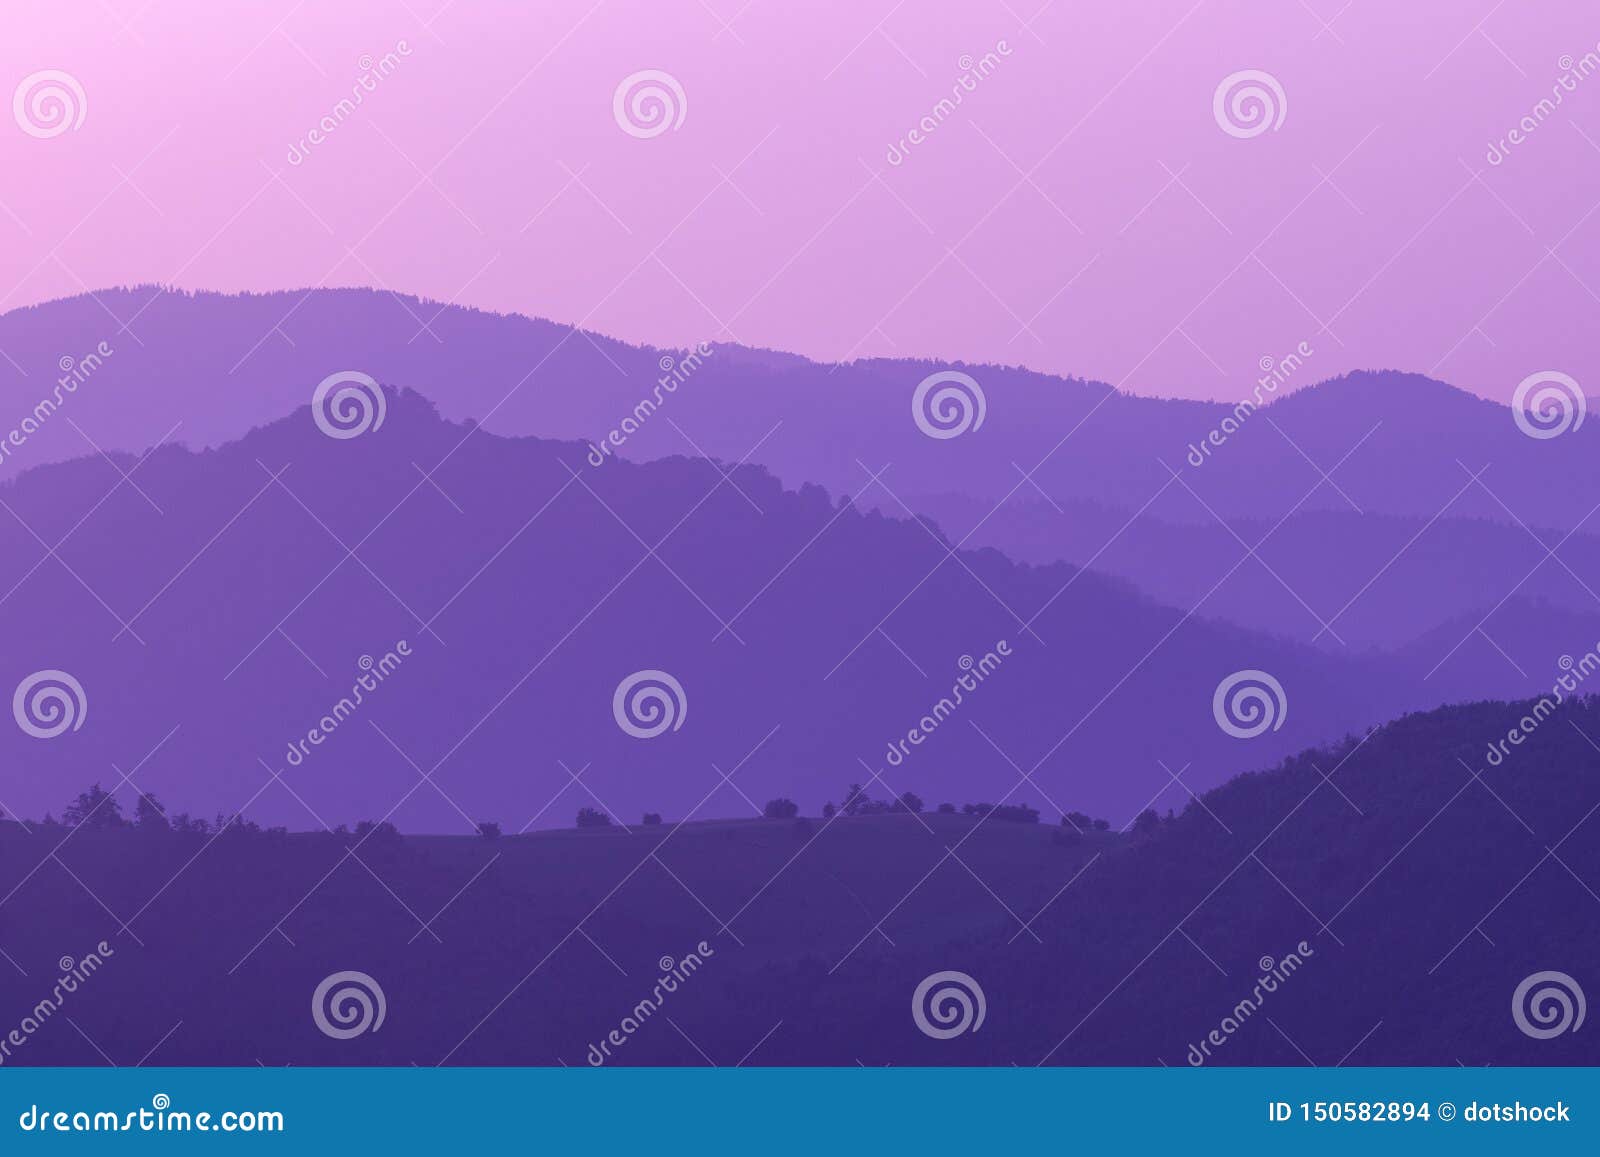 紫外紫夏风景库存照片 图片包括有紫外紫夏风景